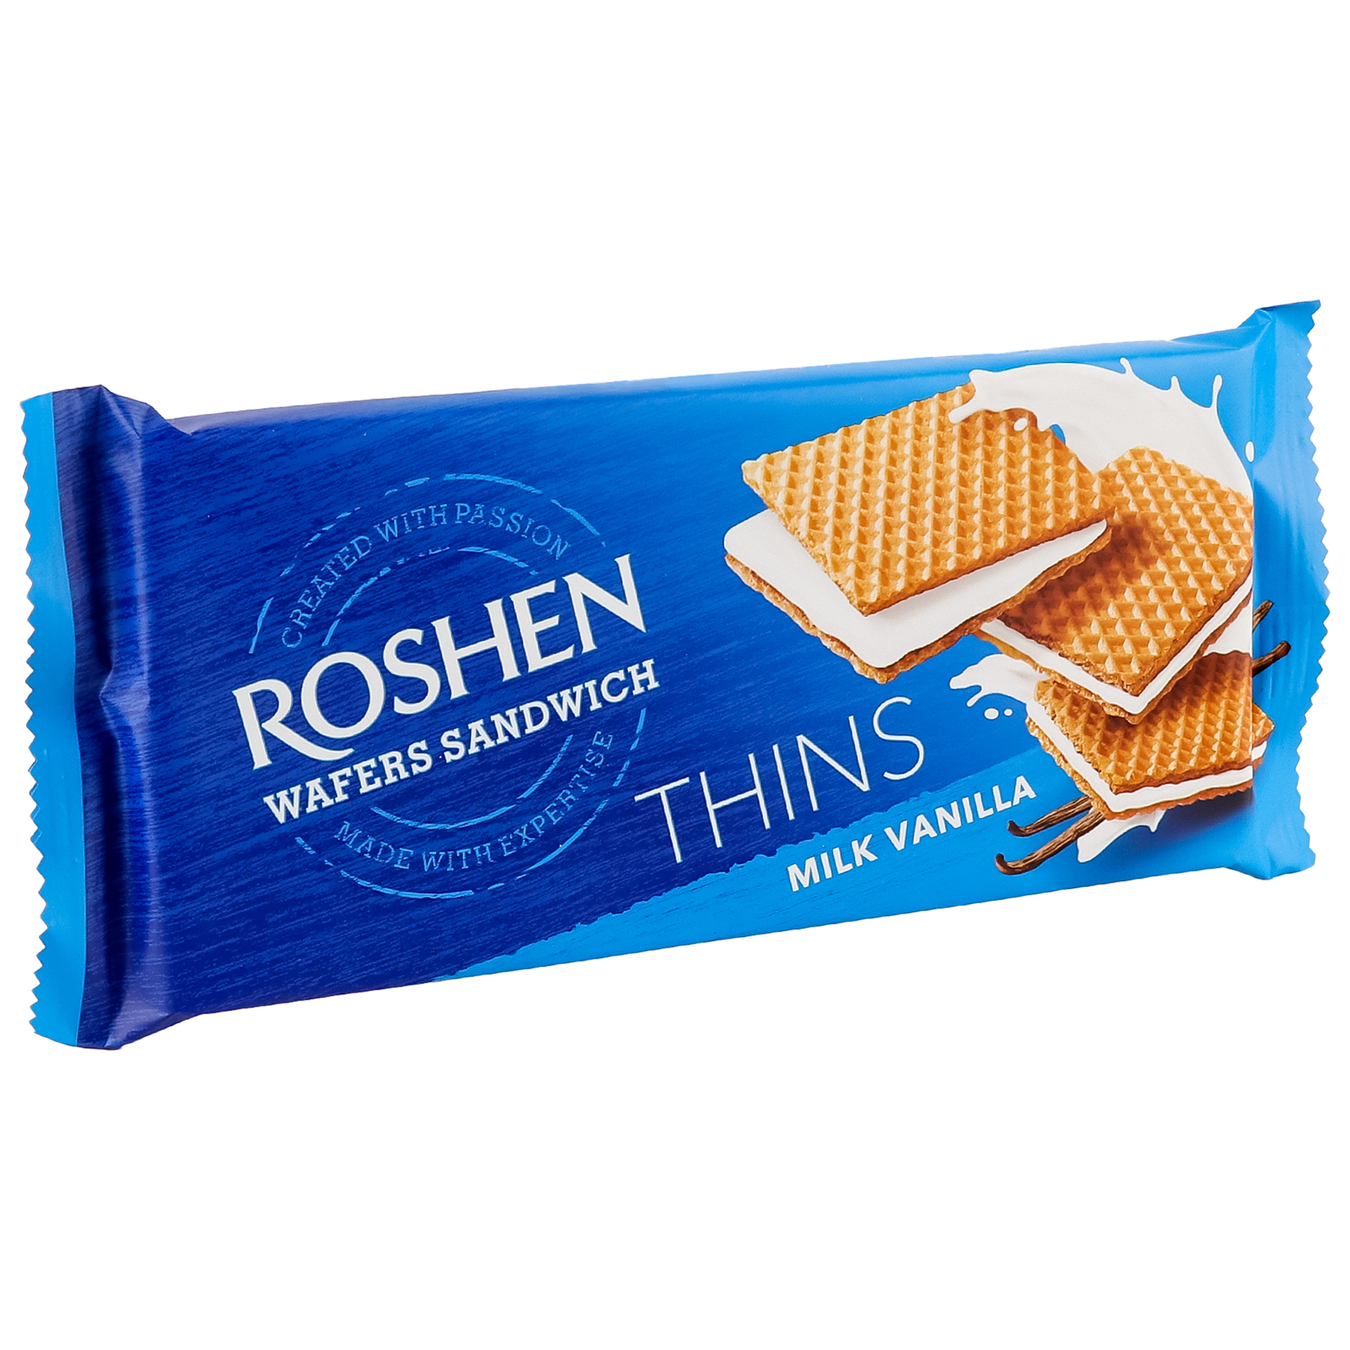 Вафлі Roshen wafers sandwich thins молоко-ваніль Roshen 50г 2